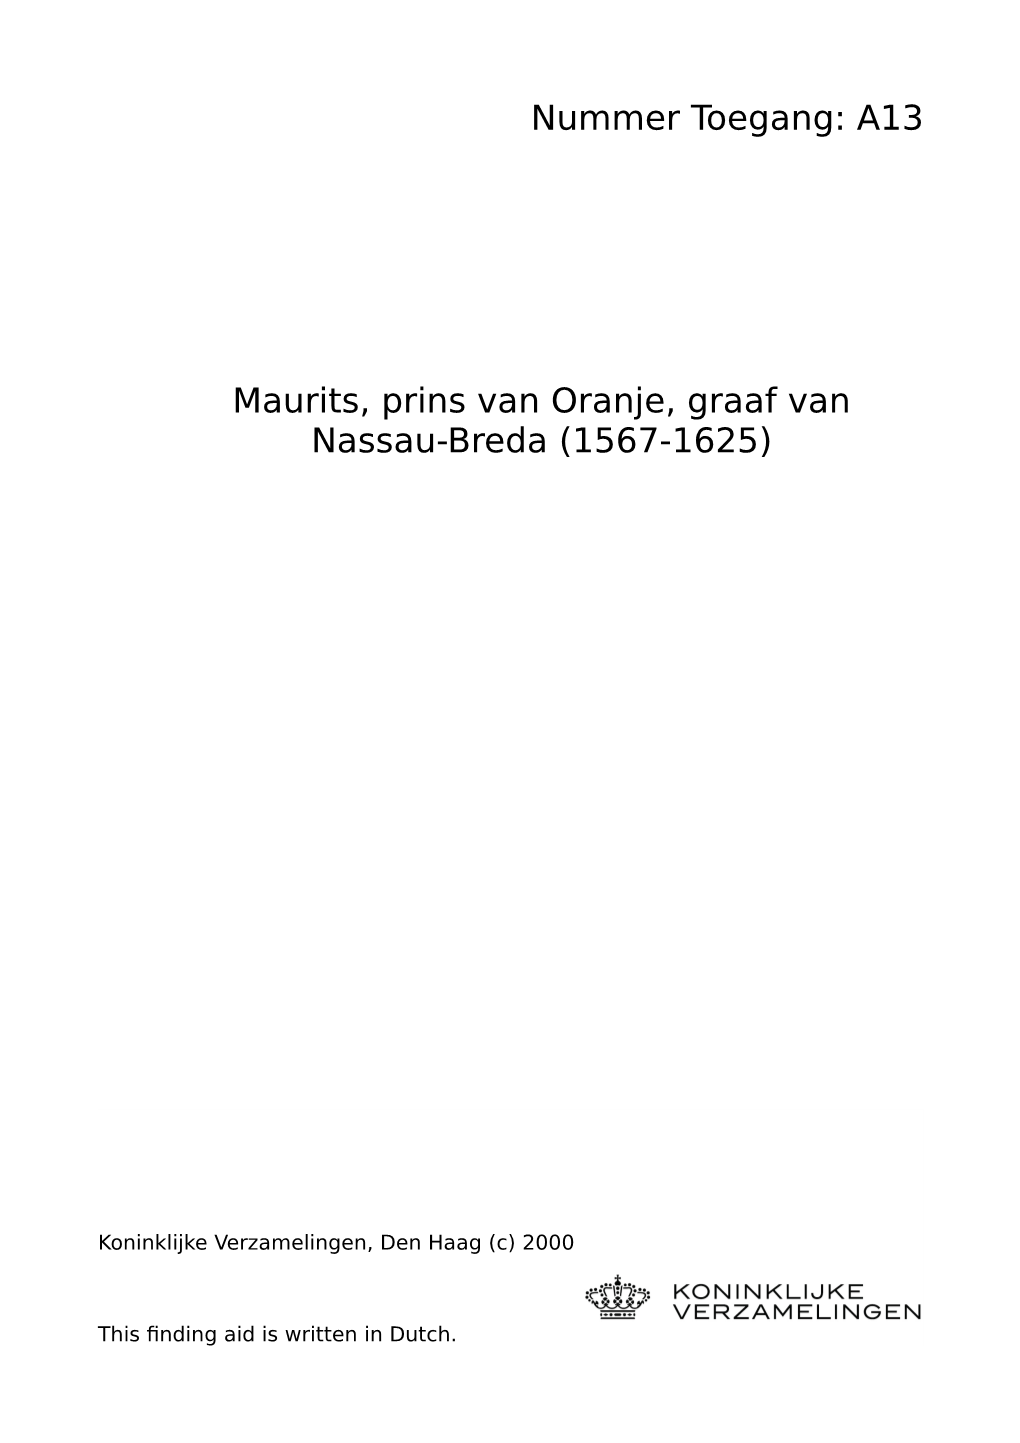 A13 Maurits, Prins Van Oranje, Graaf Van Nassau-Breda